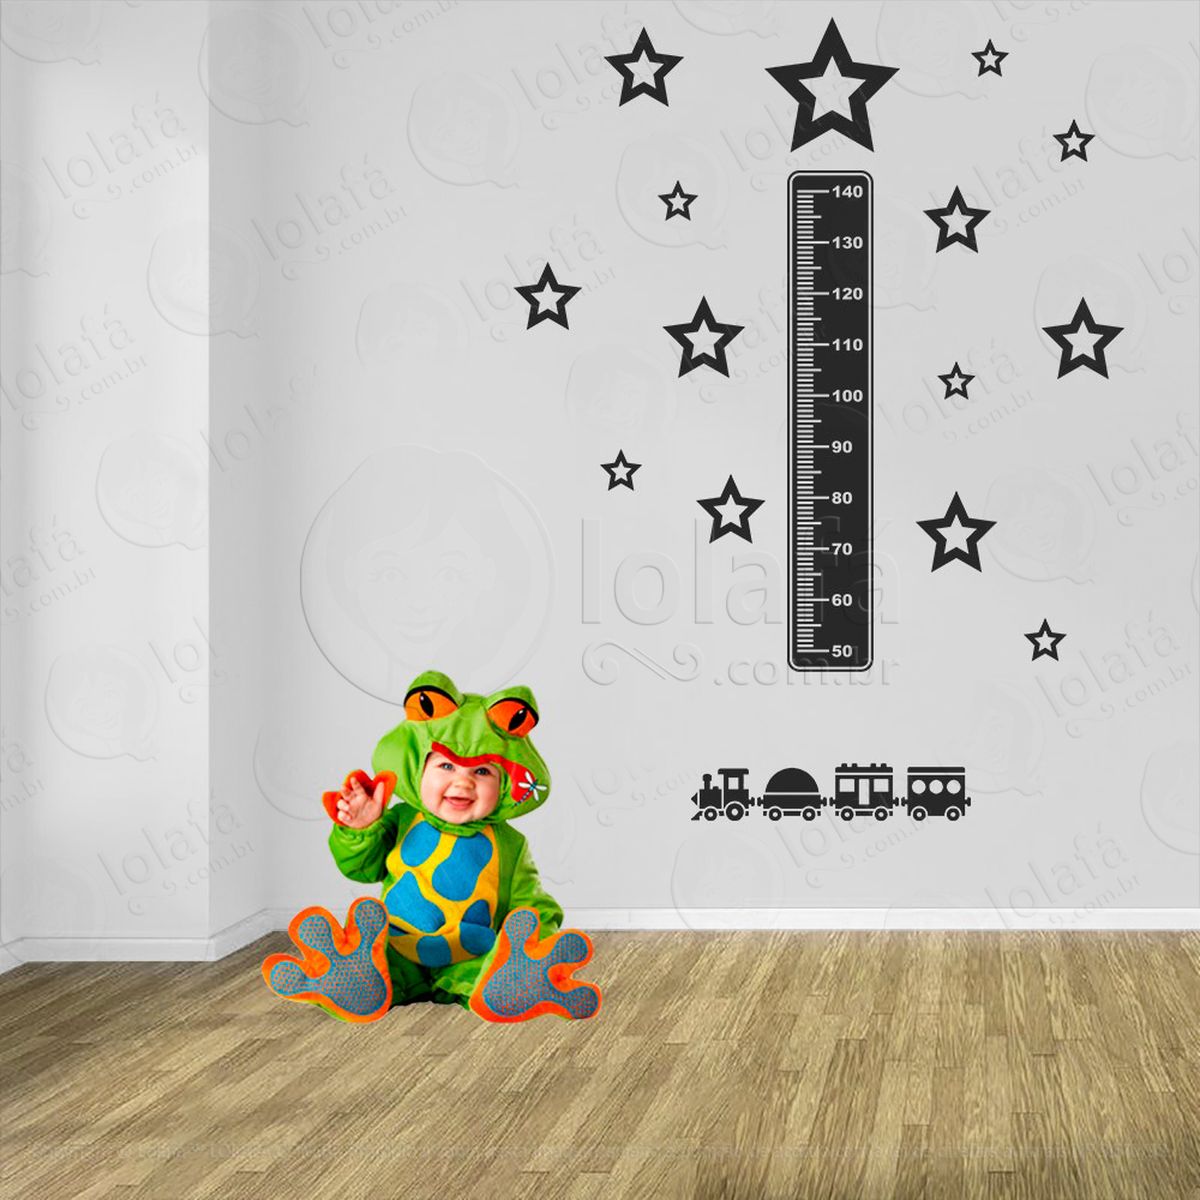 trêm e estrelas adesivo régua de crescimento infantil, medidor de altura para quarto, porta e parede - mod:1503